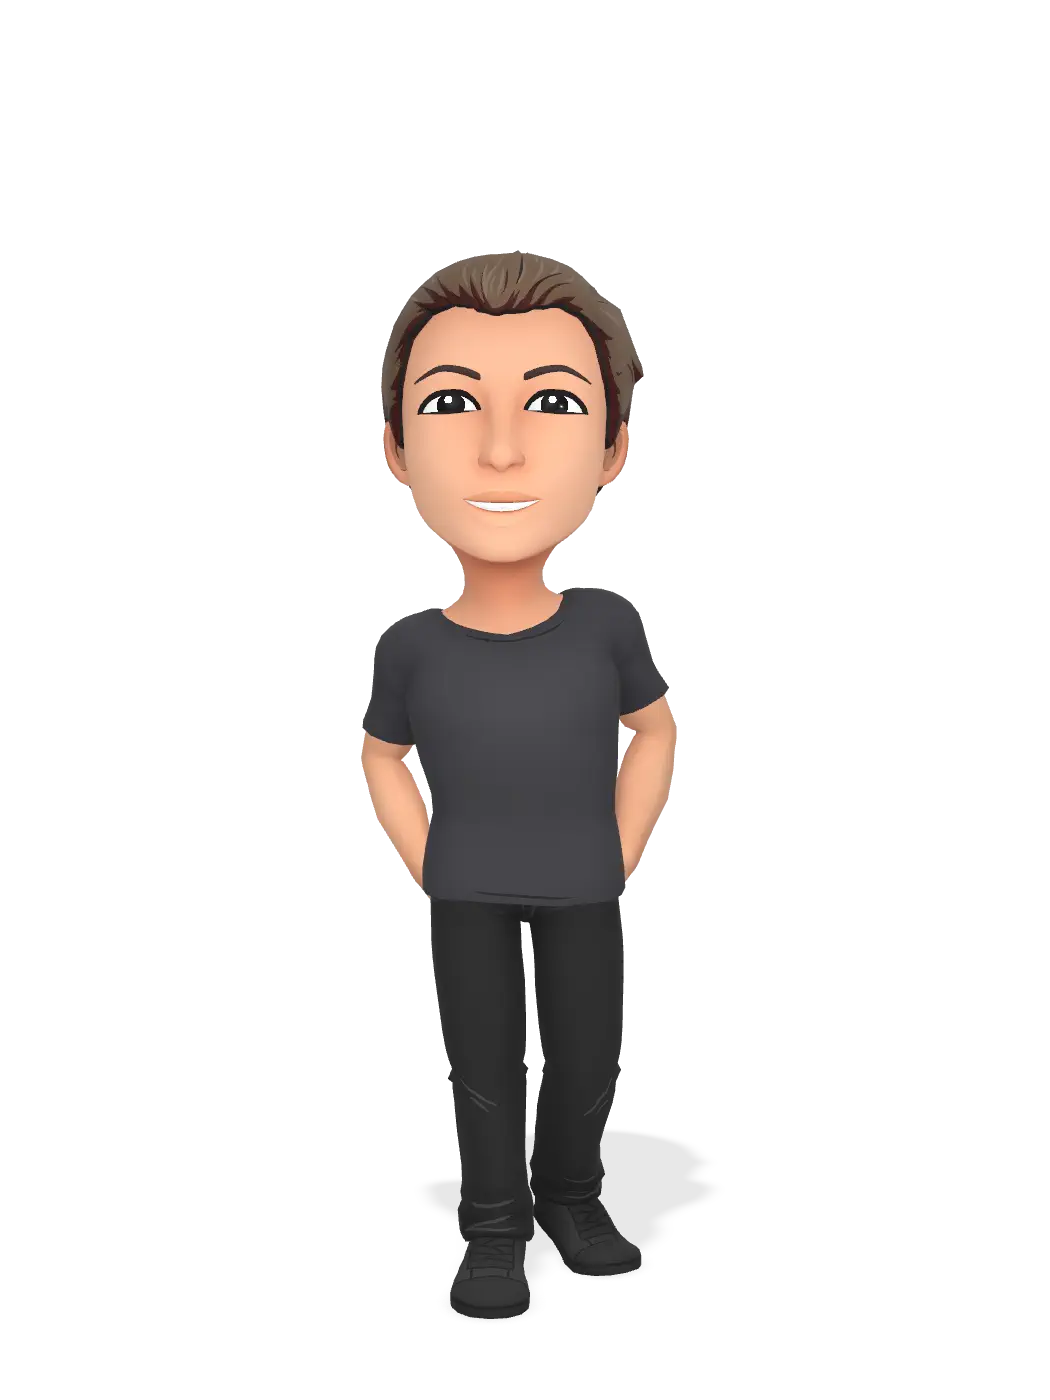 3D Bitmoji for officialblame avatar